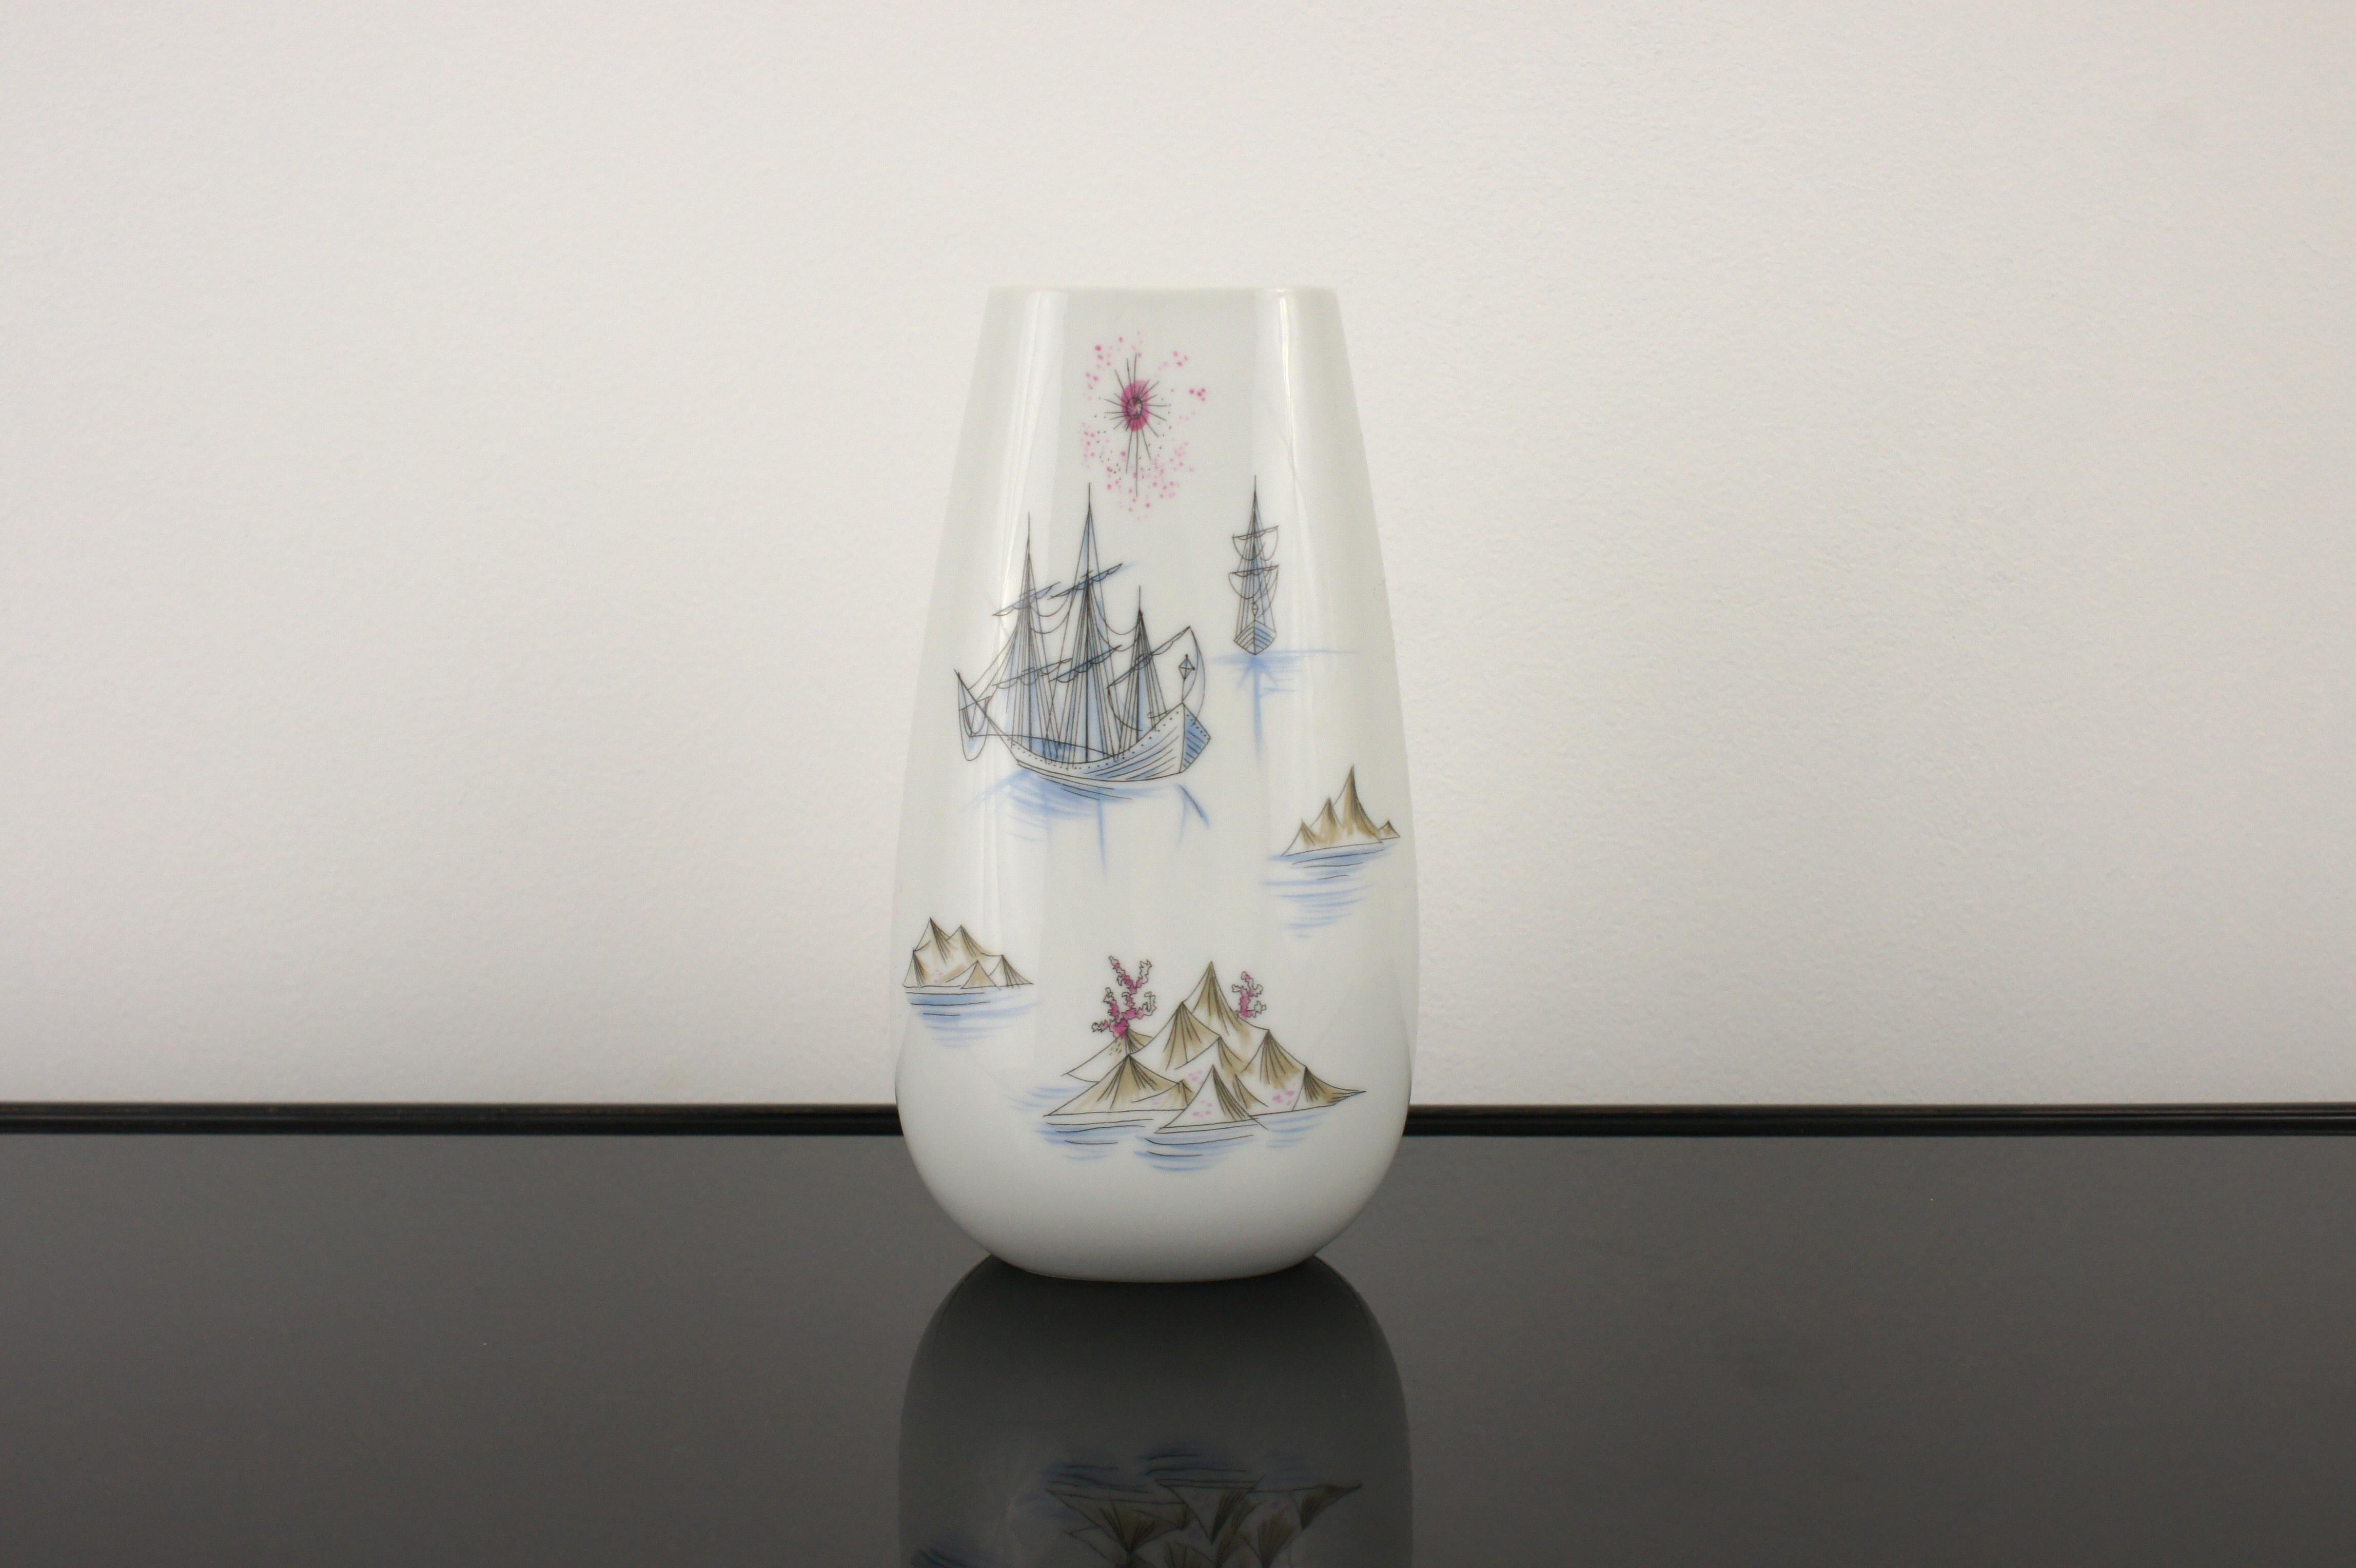 Vase aus dekorierter Keramik von Raymond Peynet für Rosenthal Studio Line, 1970er Jahre.
Perfekter Zustand, Sammlerstück.

Auf der Unterseite vom Hersteller gekennzeichnet und nummeriert ('1602')